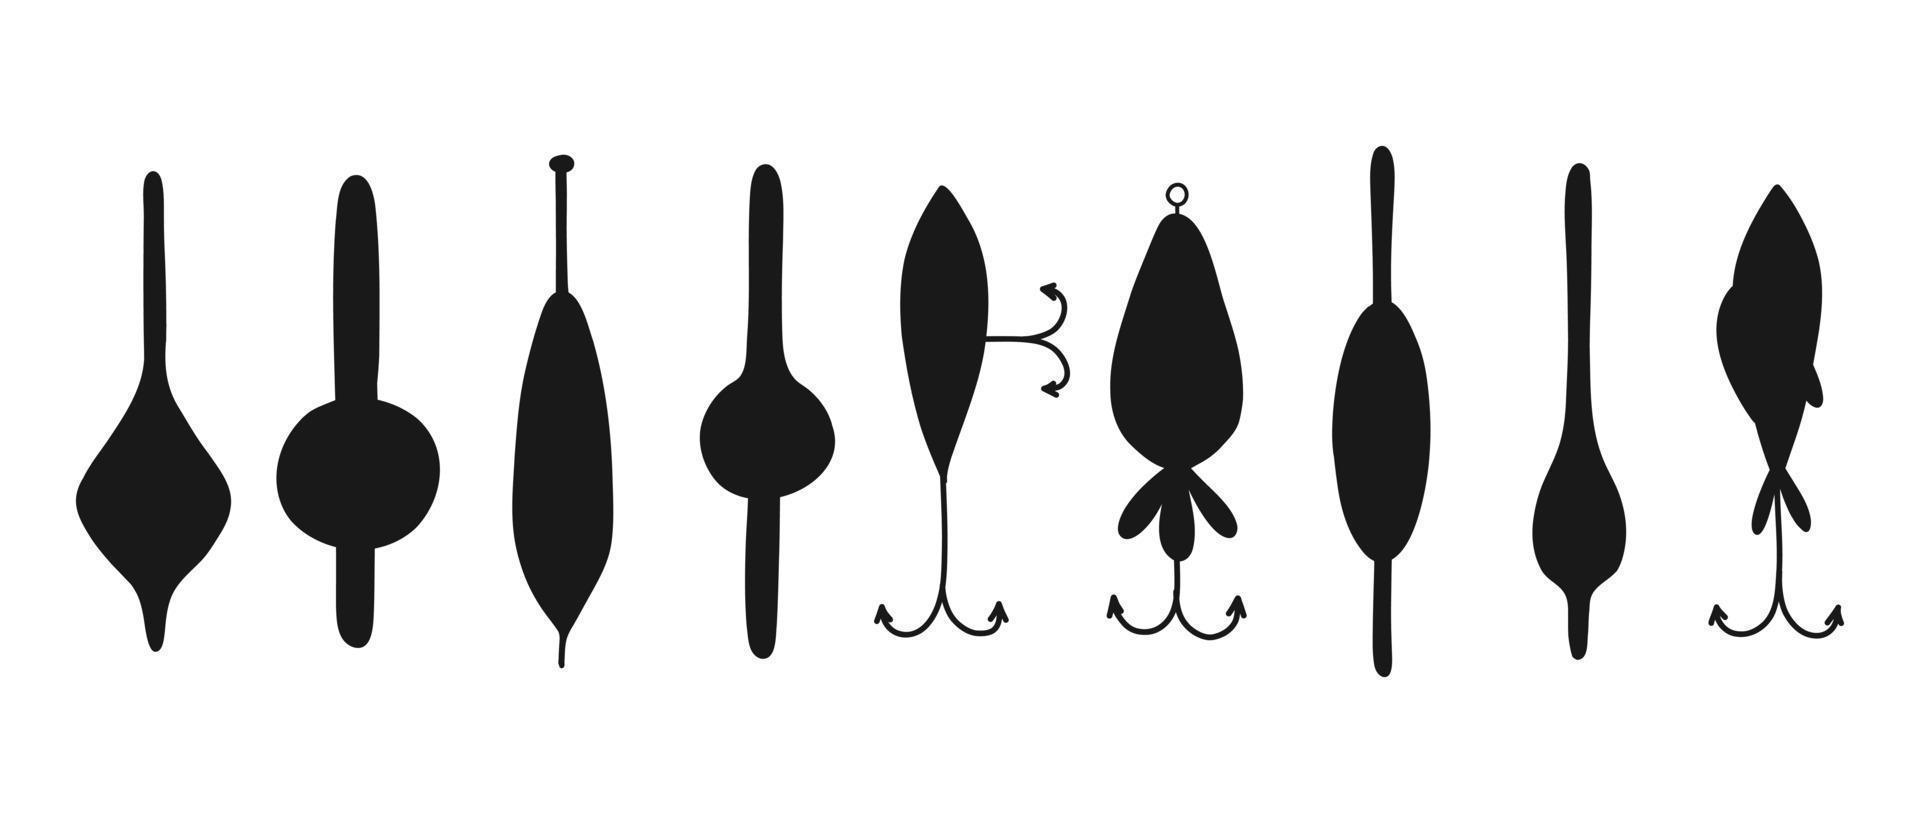 uppsättning av silhuetter för fiske. samling av tackla och lockar för fiske i silhuett stil. vektor illustration.